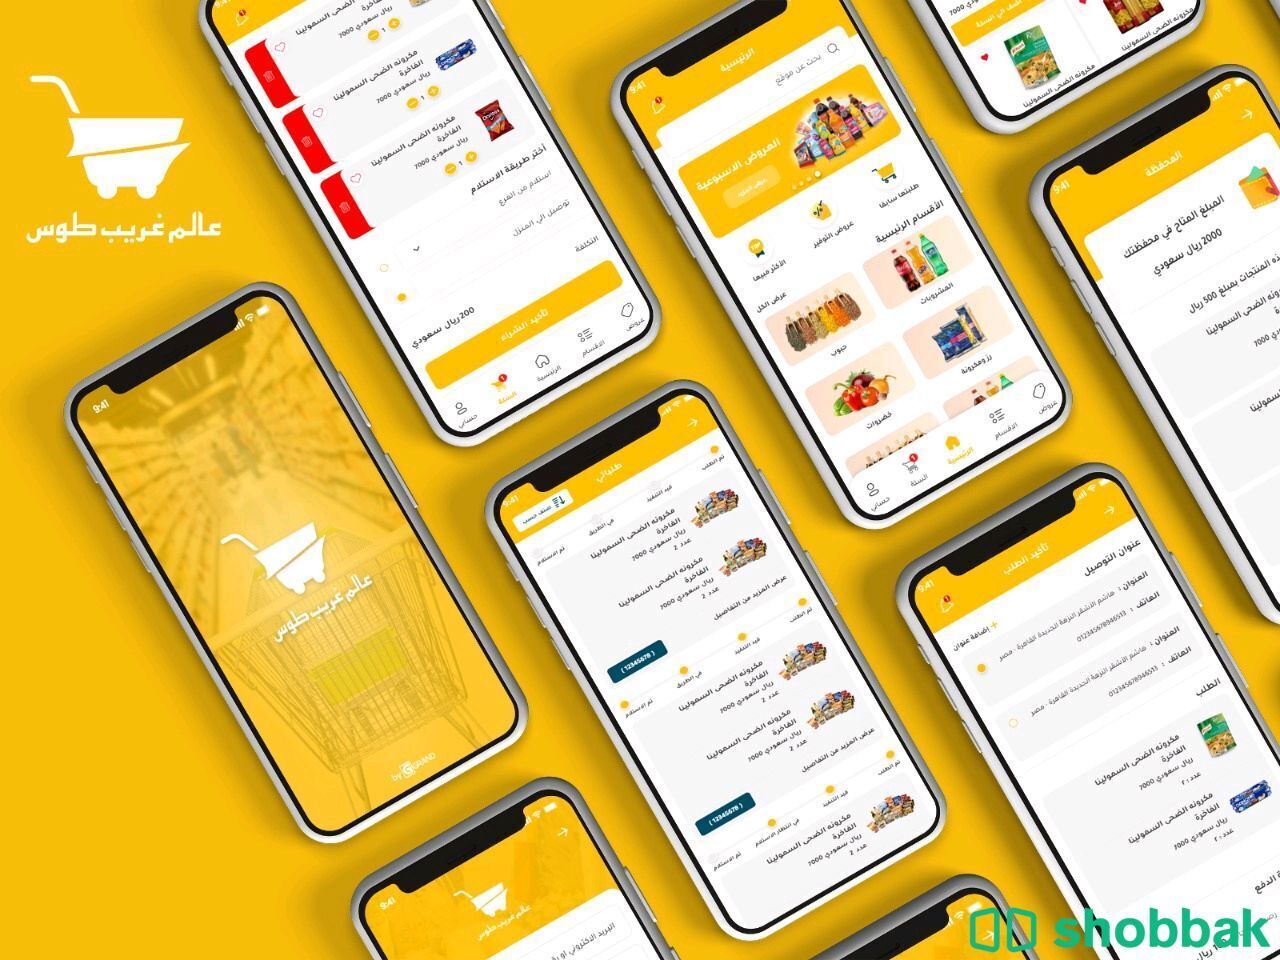 تصميم وبرمجة تطبيقات الجوال والمتاجر الالكترونيه شباك السعودية